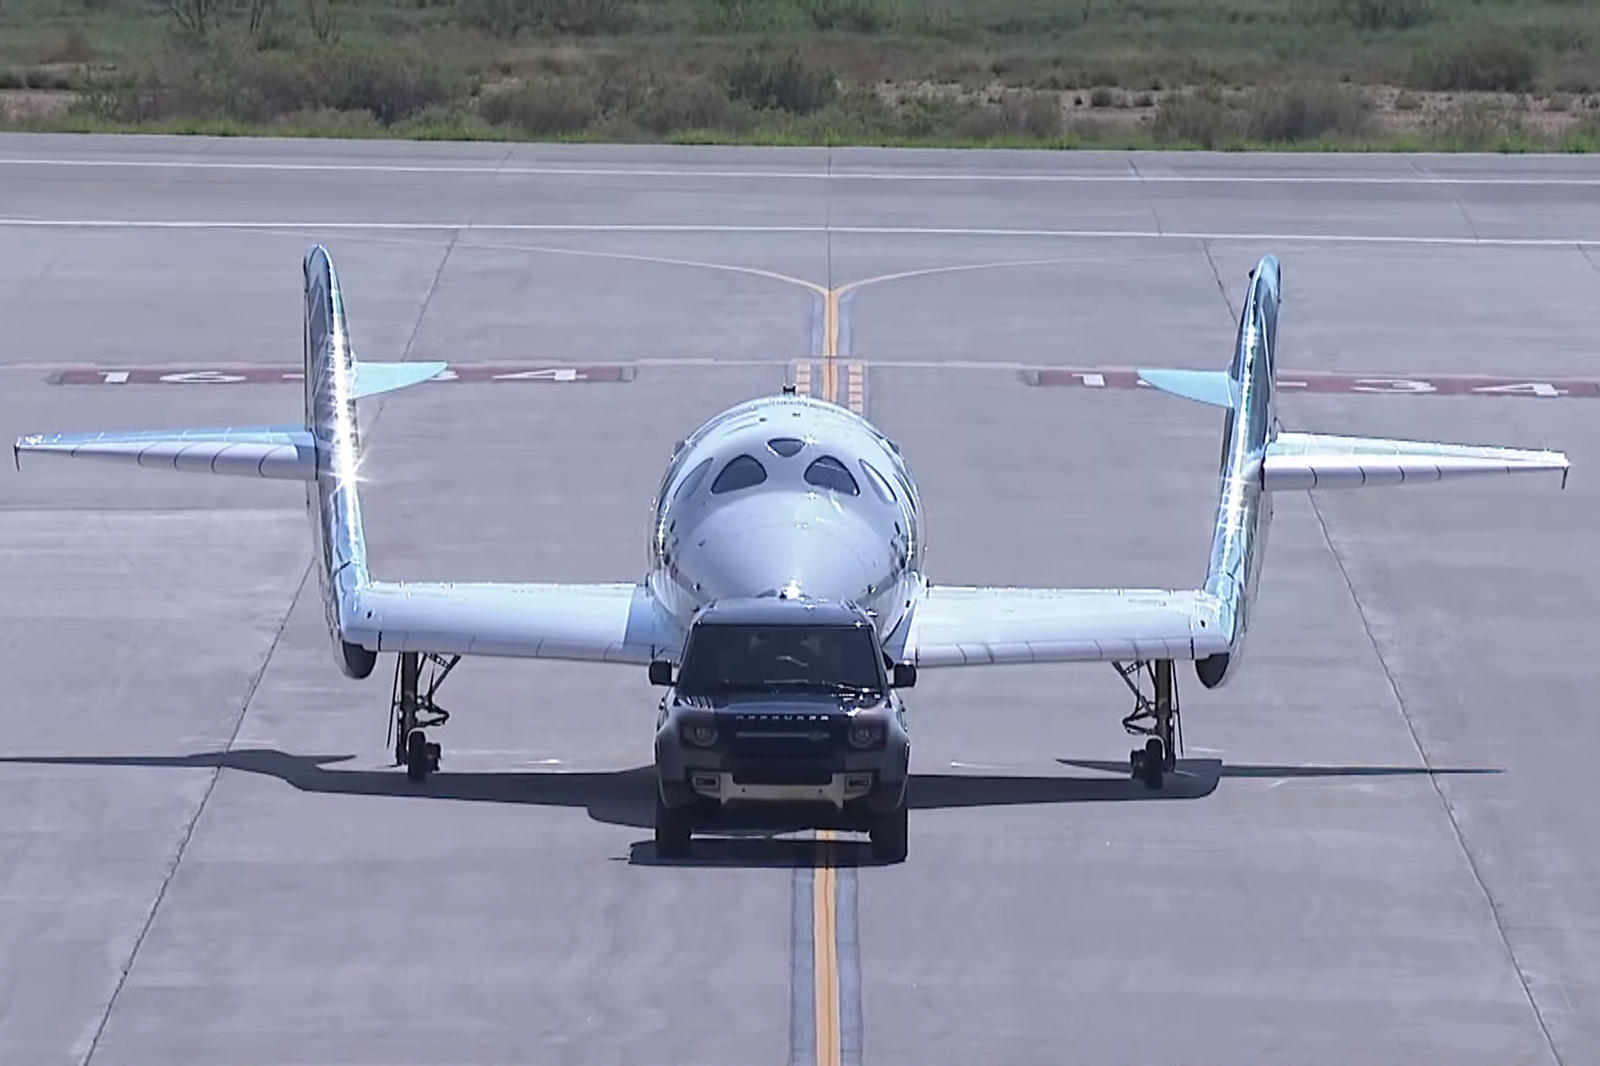 Virgin не опубликовала никаких спецификаций веса SpaceShipTwo Unity, но он явно соответствует буксируемой способности Defender в 3720 кг. Помимо использования Defender для буксировки своего космического корабля, Virgin Galactic использует Land Rover 